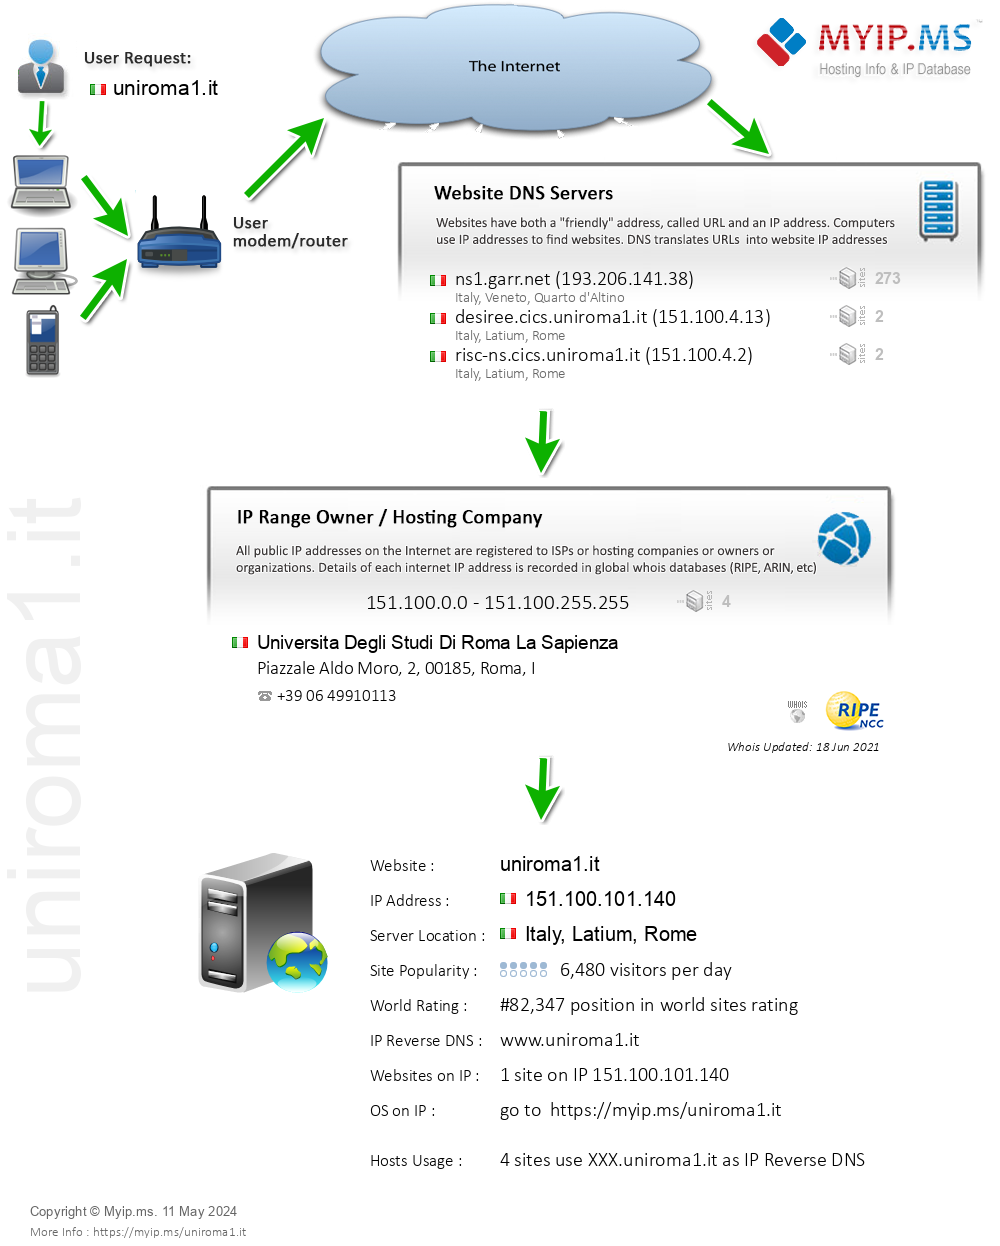 Uniroma1.it - Website Hosting Visual IP Diagram